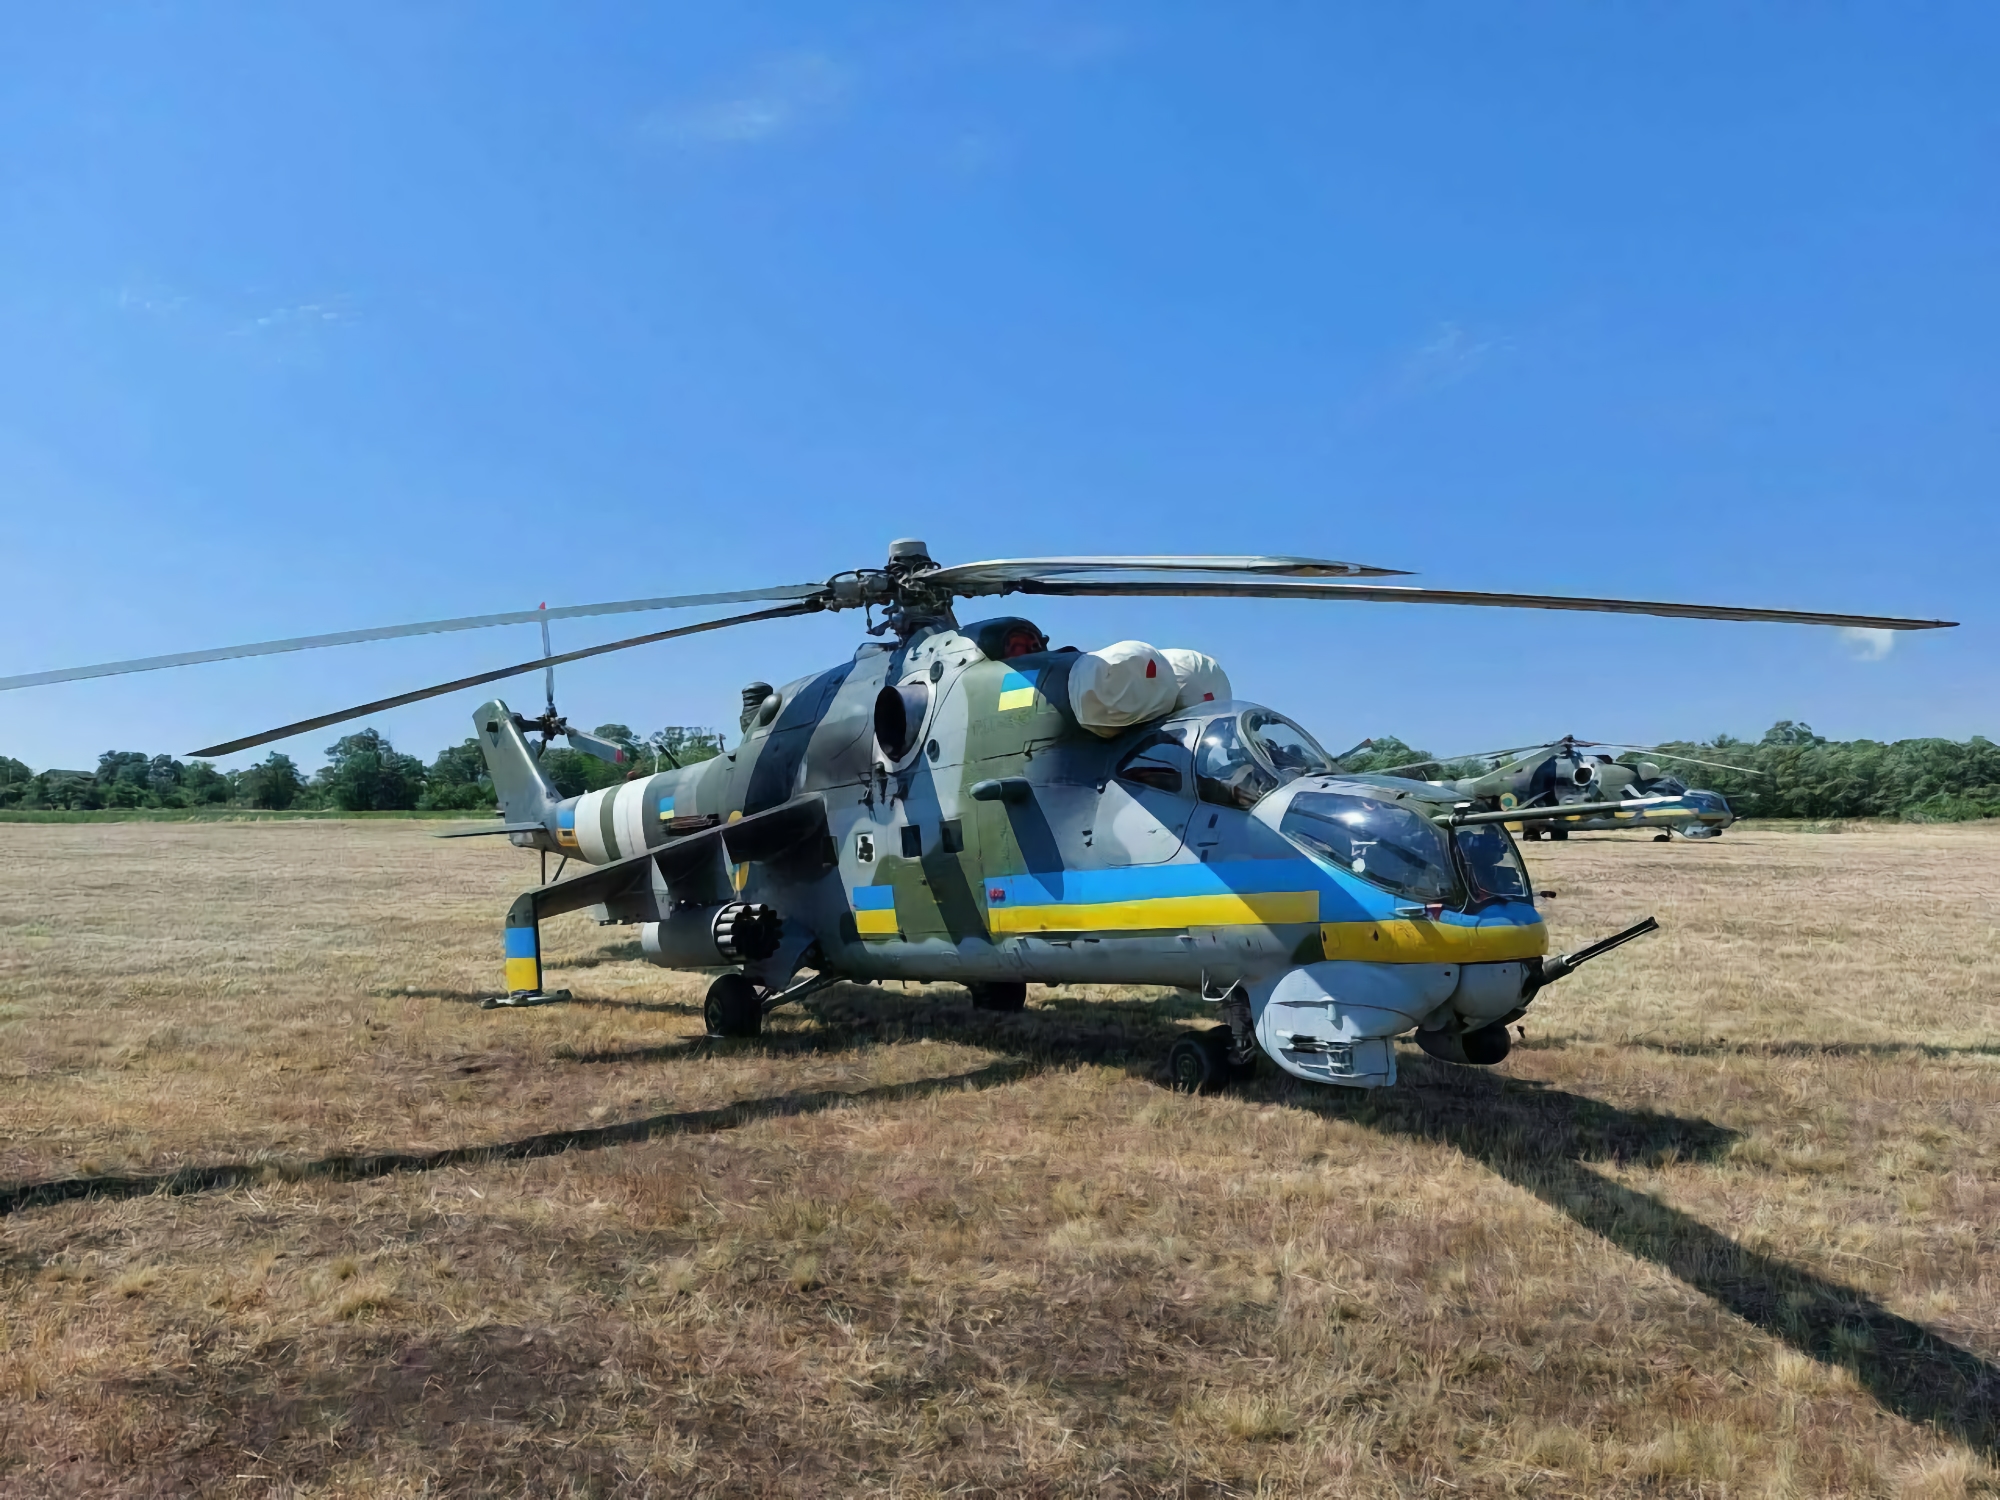 L'Aeronautica Militare delle Forze Armate dell'Ucraina utilizza elicotteri Mi-24V contro i russi, sono stati trasferiti in Ucraina dalla Repubblica Ceca